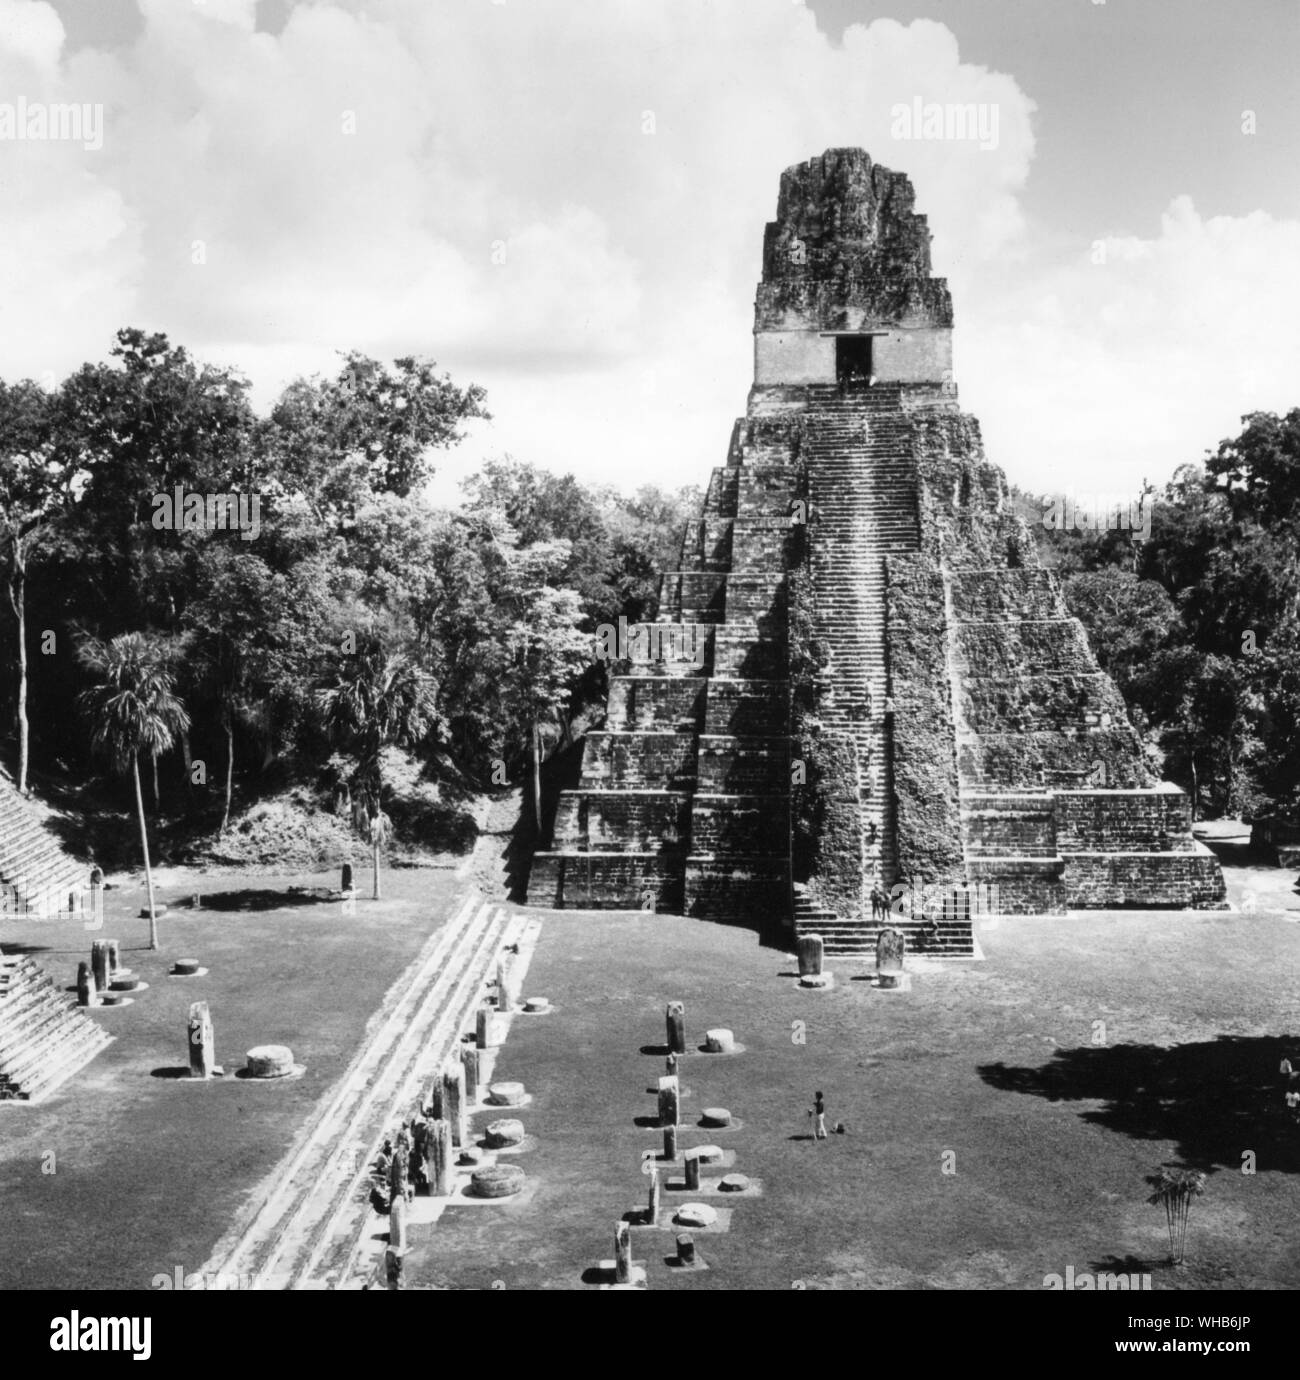 II - templo de Tikal, Guatemala. Tikal (o Tik'al, según la ortografía actual) es la más grande de las antiguas ciudades en ruinas de la civilización Maya. Se encuentra ubicado en el departamento de El Petén de Guatemala. Ahora forma parte del Parque Nacional de Tikal en Guatemala, es un sitio del Patrimonio Mundial de la UNESCO y un popular lugar turístico. Foto de stock